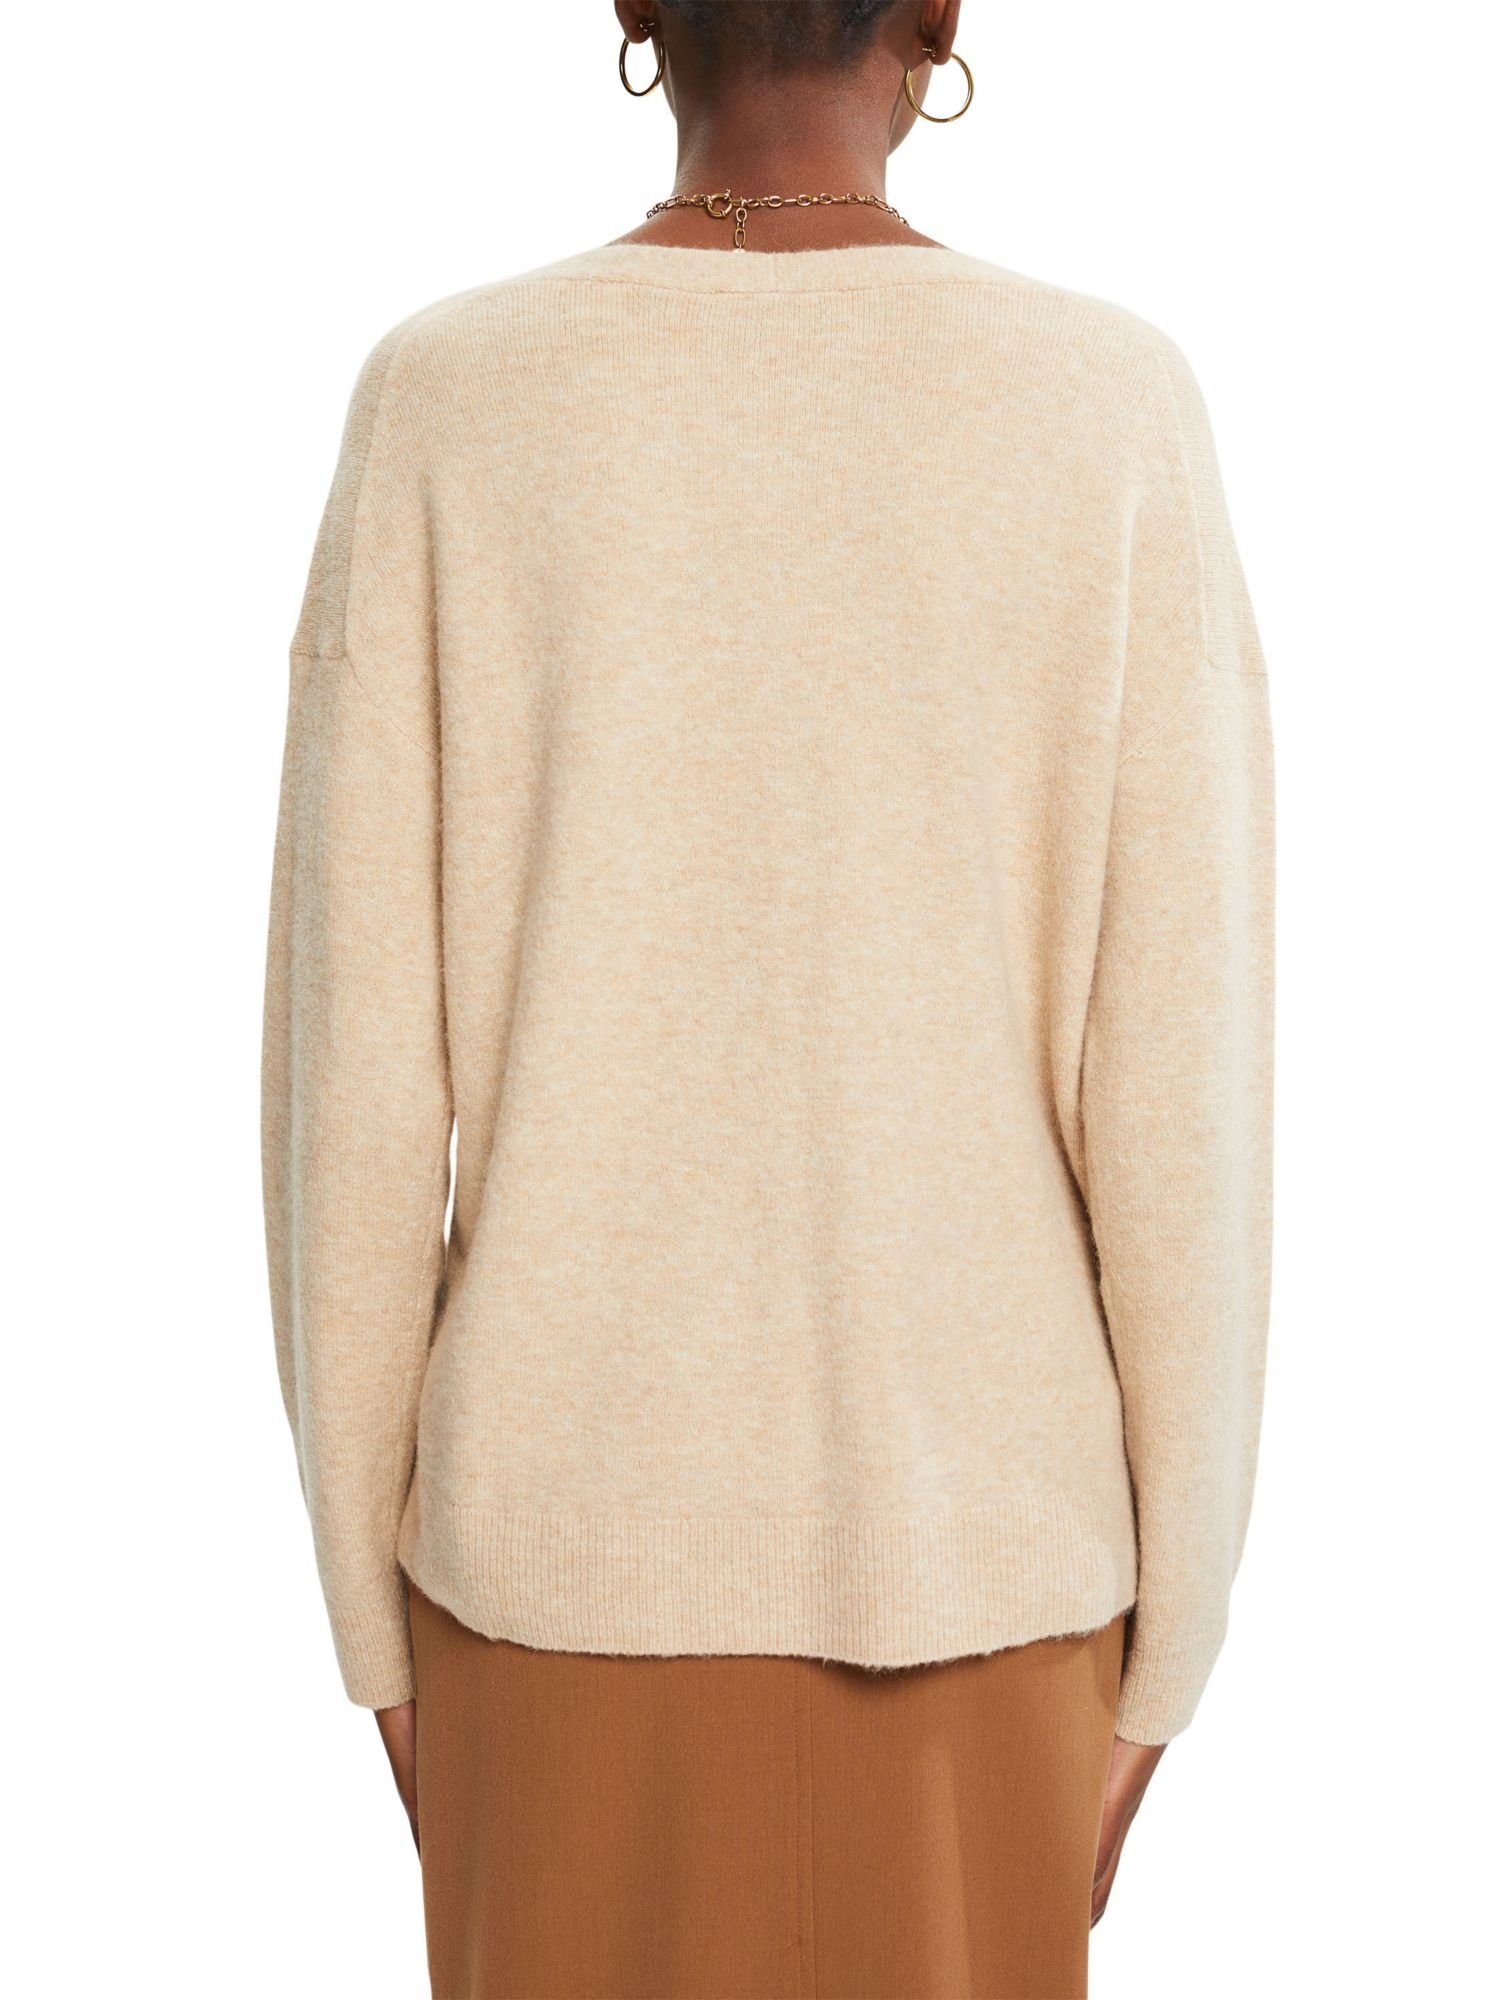 V-Ausschnitt-Pullover Pullover SAND flauschiger Wolle: Esprit Mit